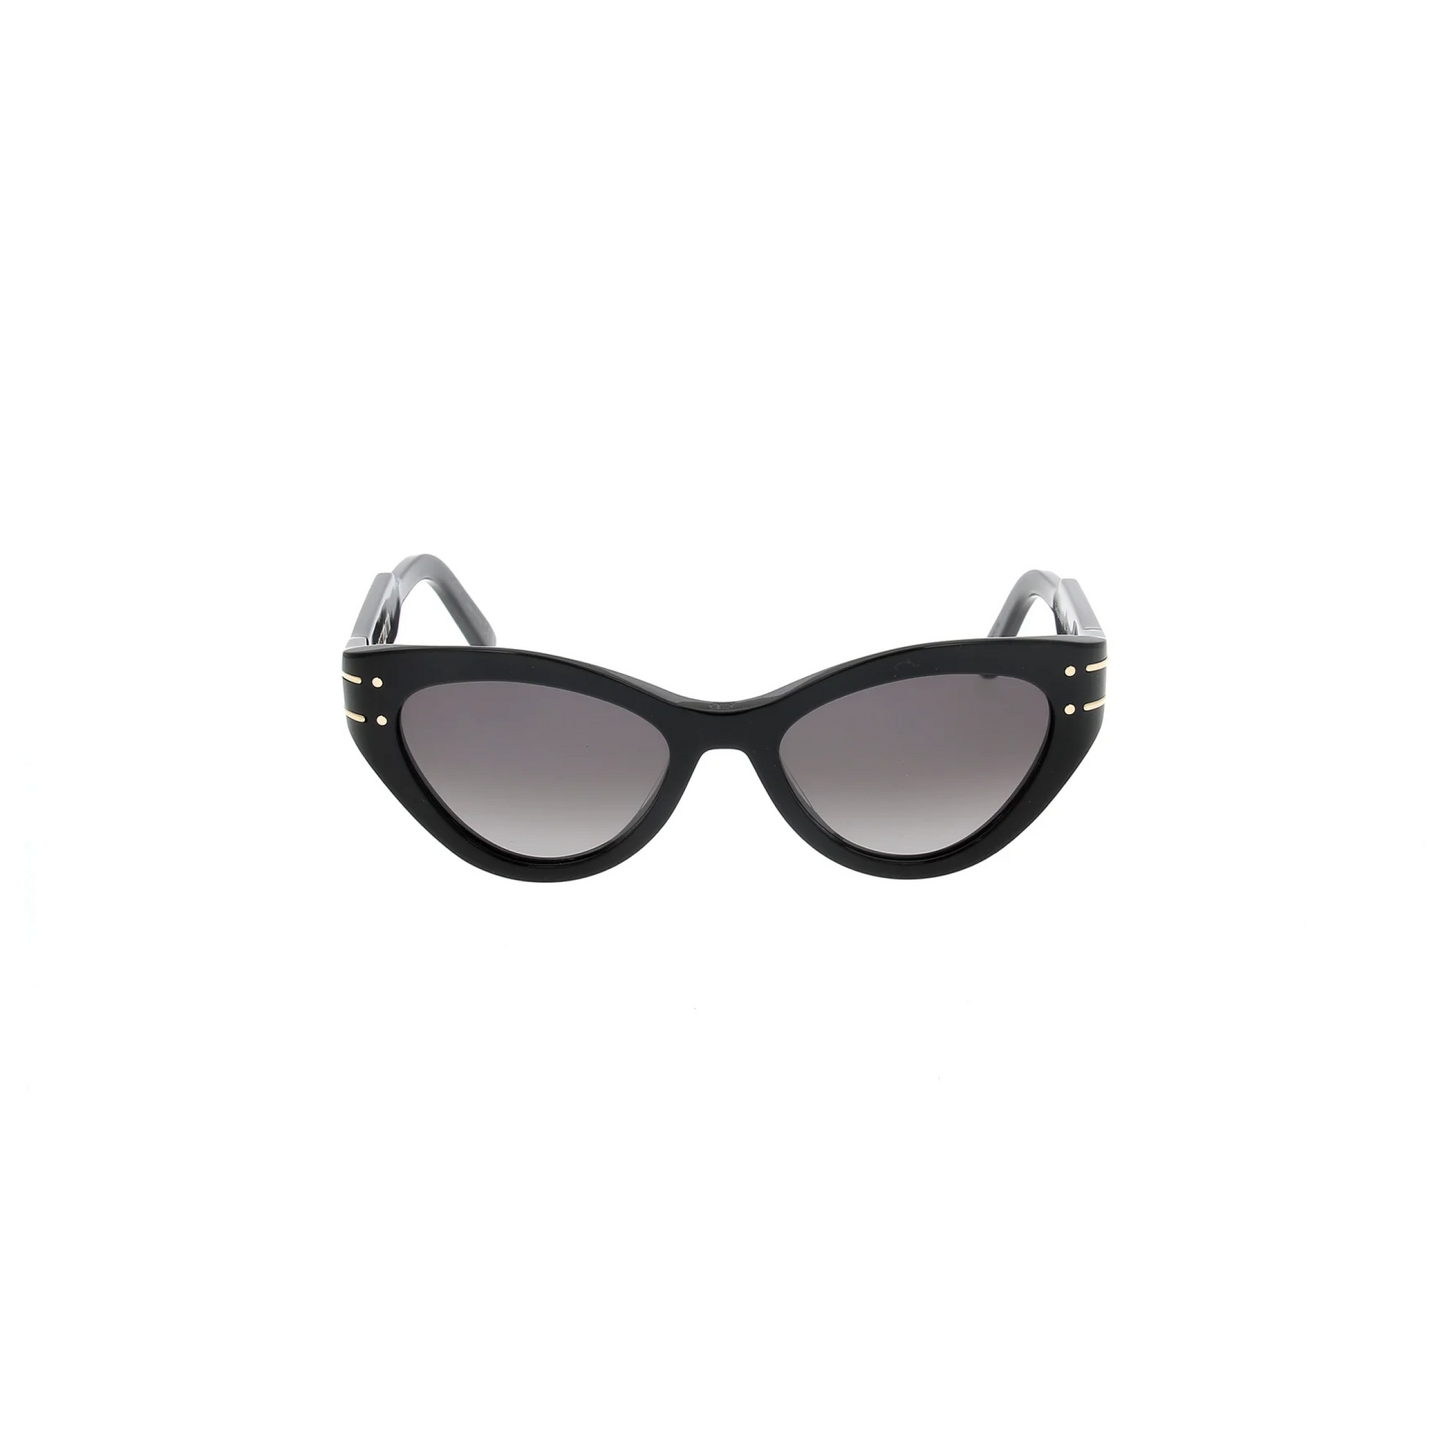 DiorSignature B7I 10A152 Sunglasses in Black